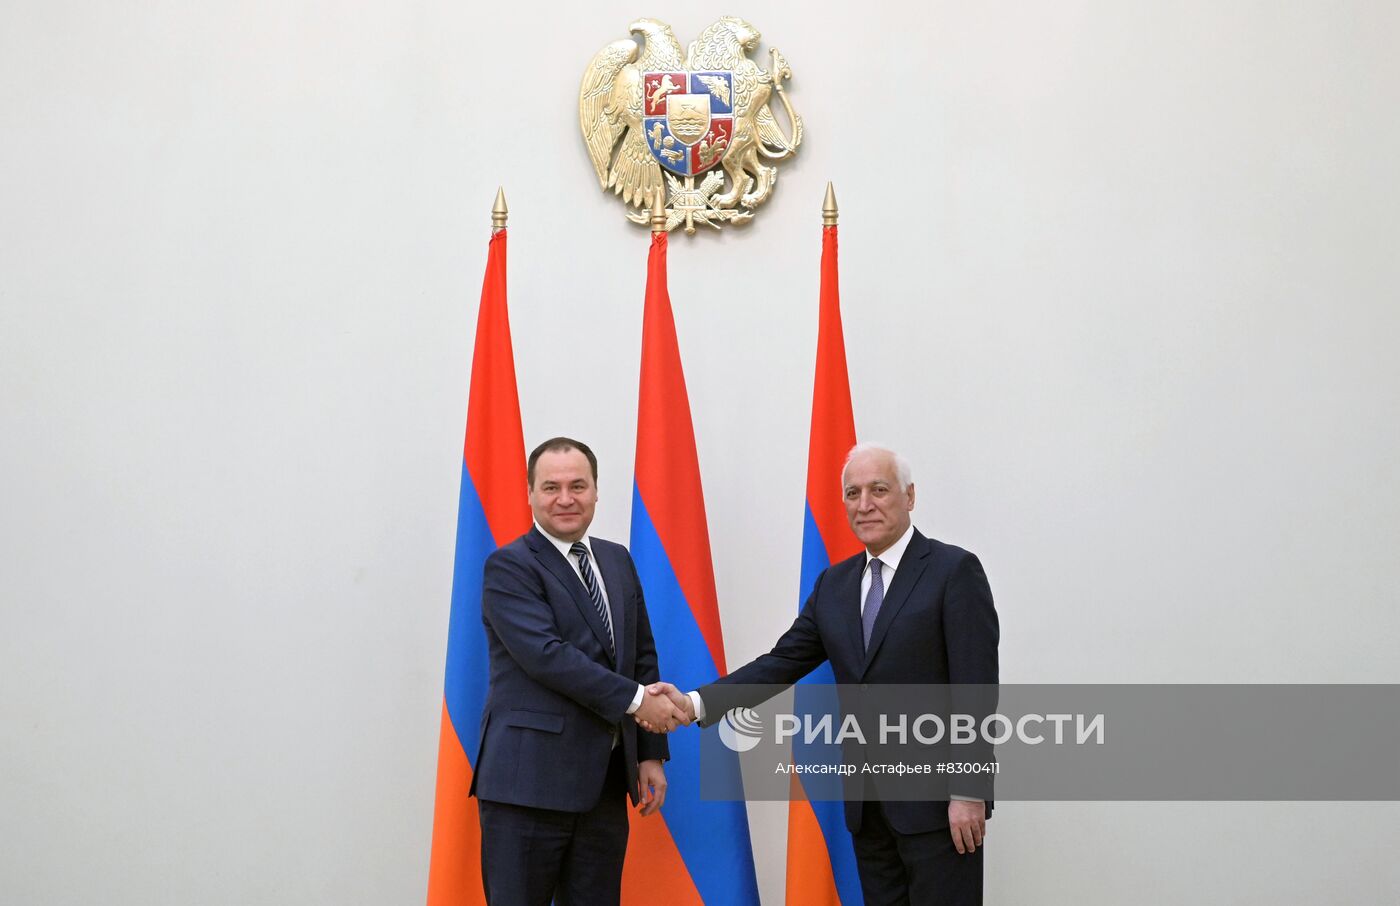 Премьер-министр РФ М. Мишустин принял участие в заседании межправительственного совета стран ЕАЭС в Ереване